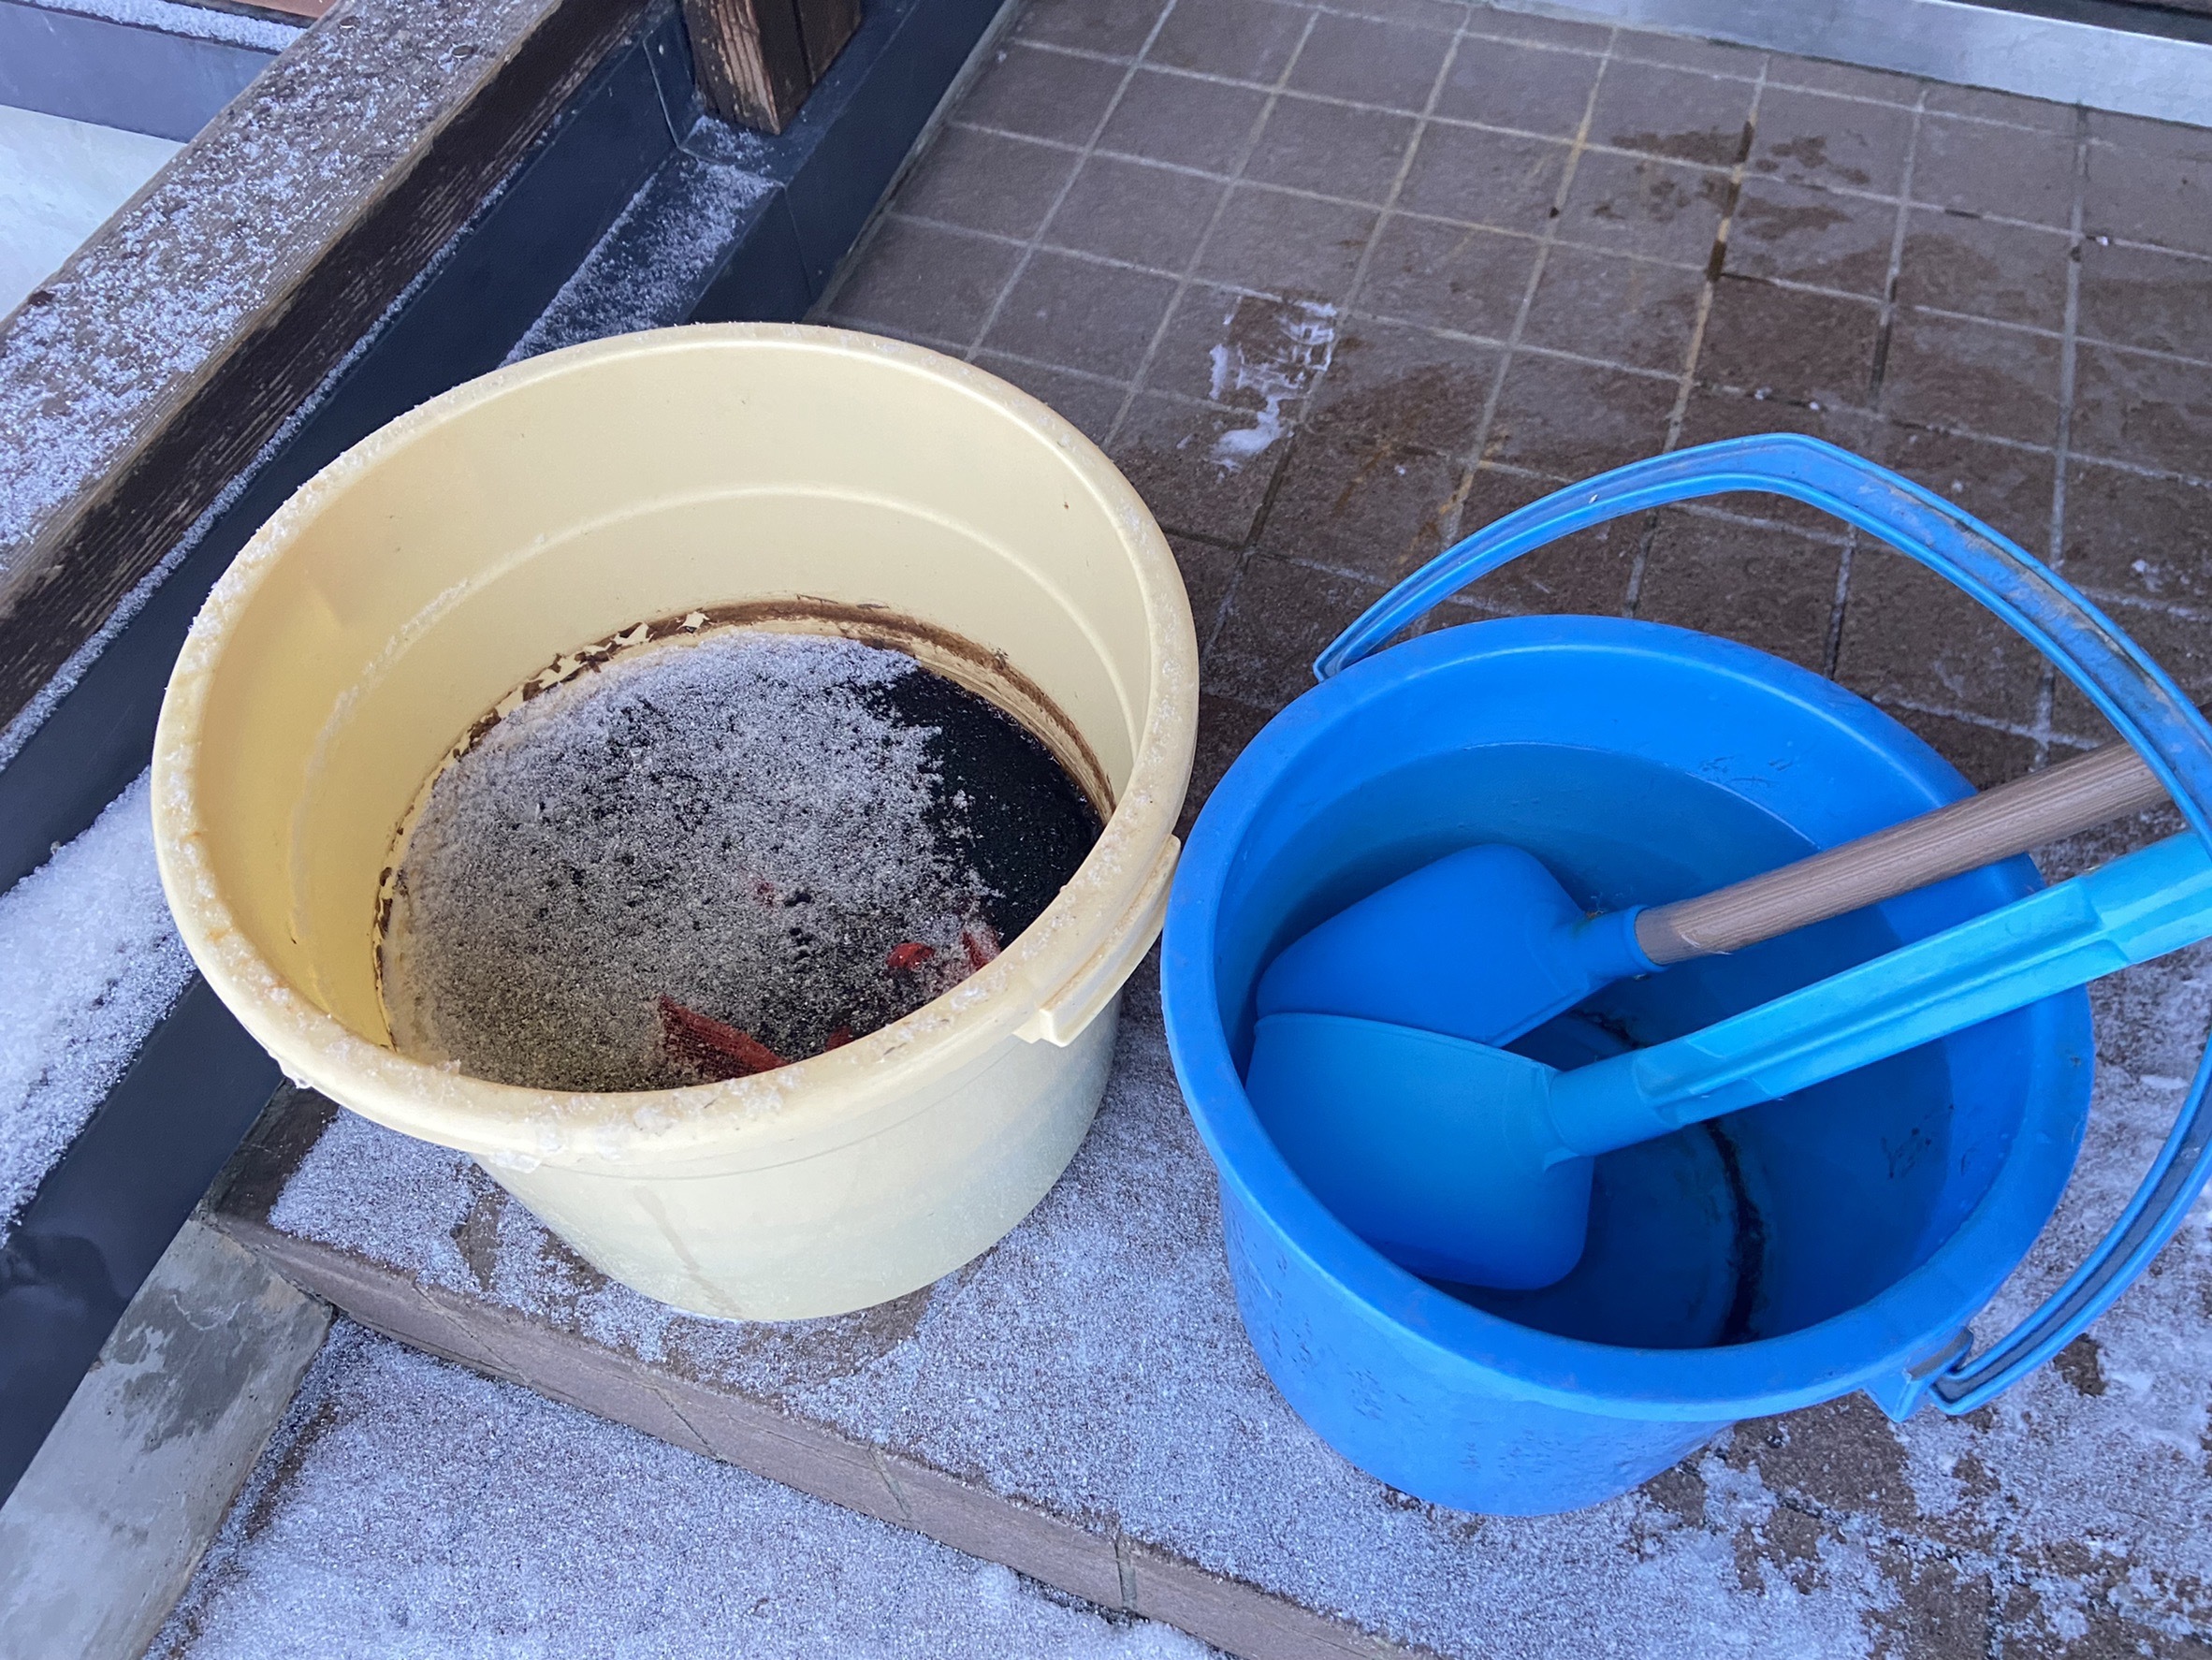 オニグルミの実を浸した水が凍ったのでお湯で溶かすことにしました